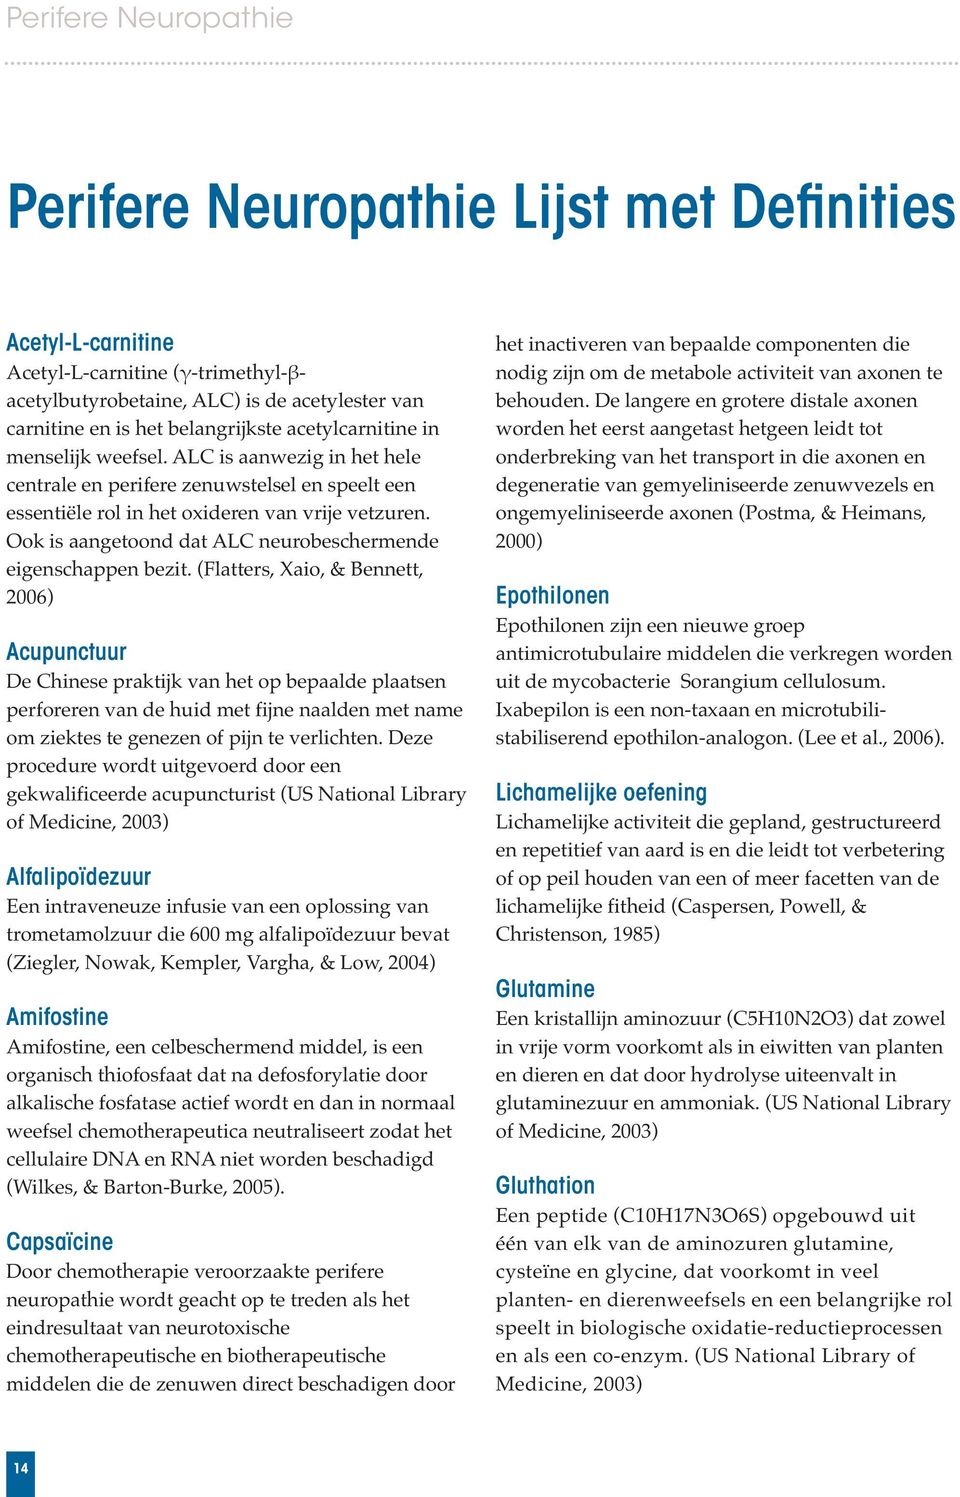 Ook is aangetoond dat ALC neurobeschermende eigenschappen bezit.